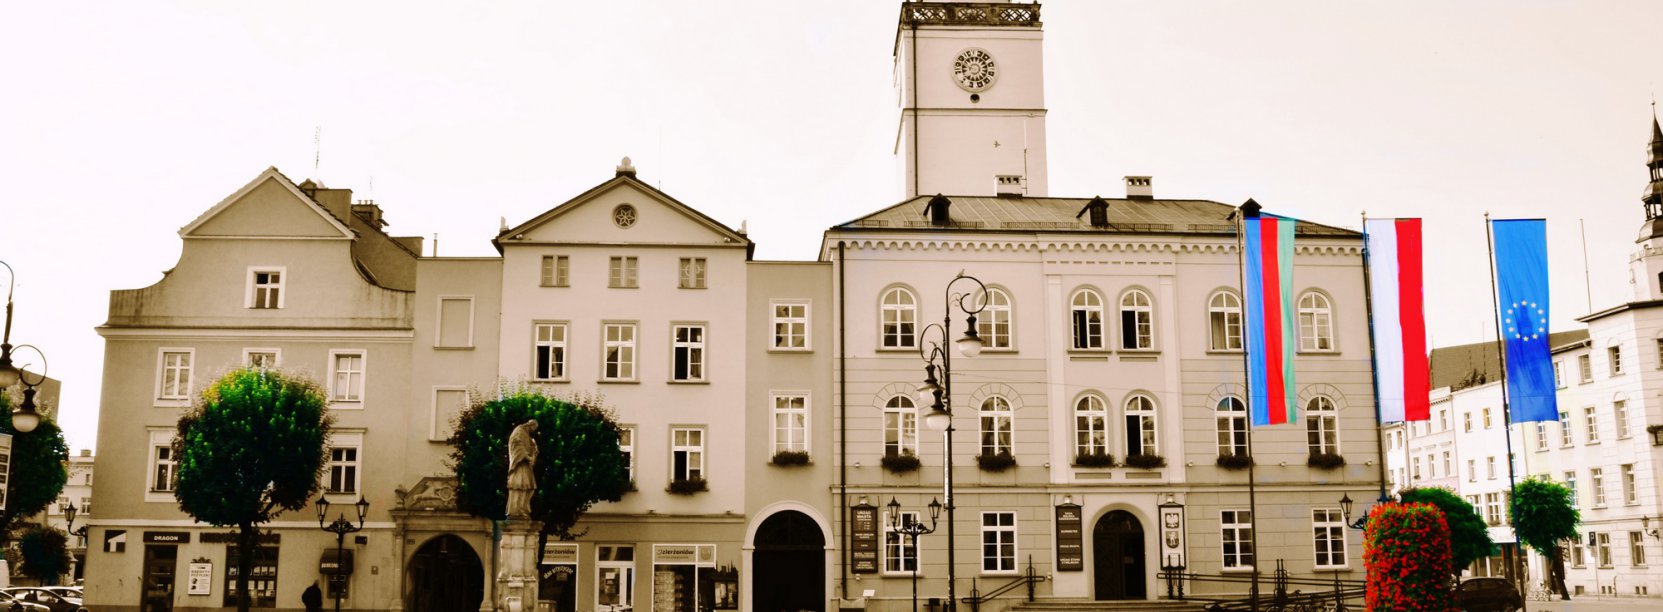 Rynek i widok dzierżoniowskiego ratusza, obok flaga Polski, Unii Europejskiej i miasta